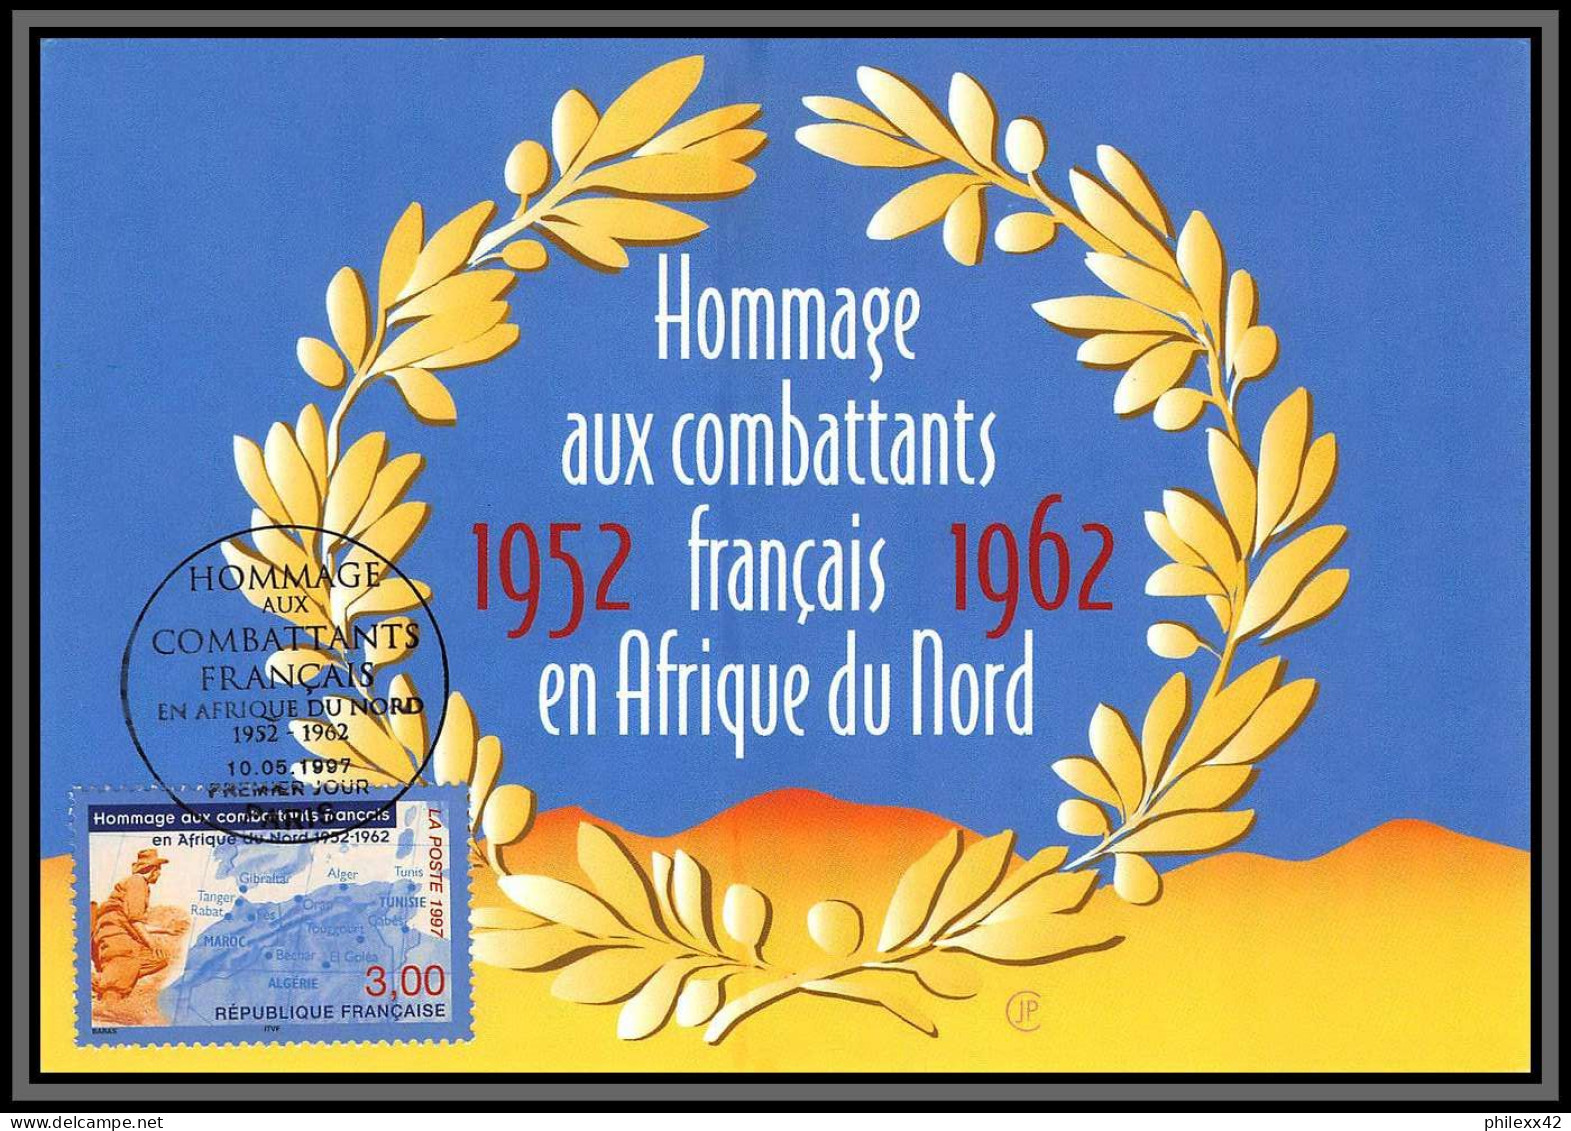 57529/ Carte maximum (card) France Année 1997 N°3042/3128 61 cartes différentes état superbe édition CEF